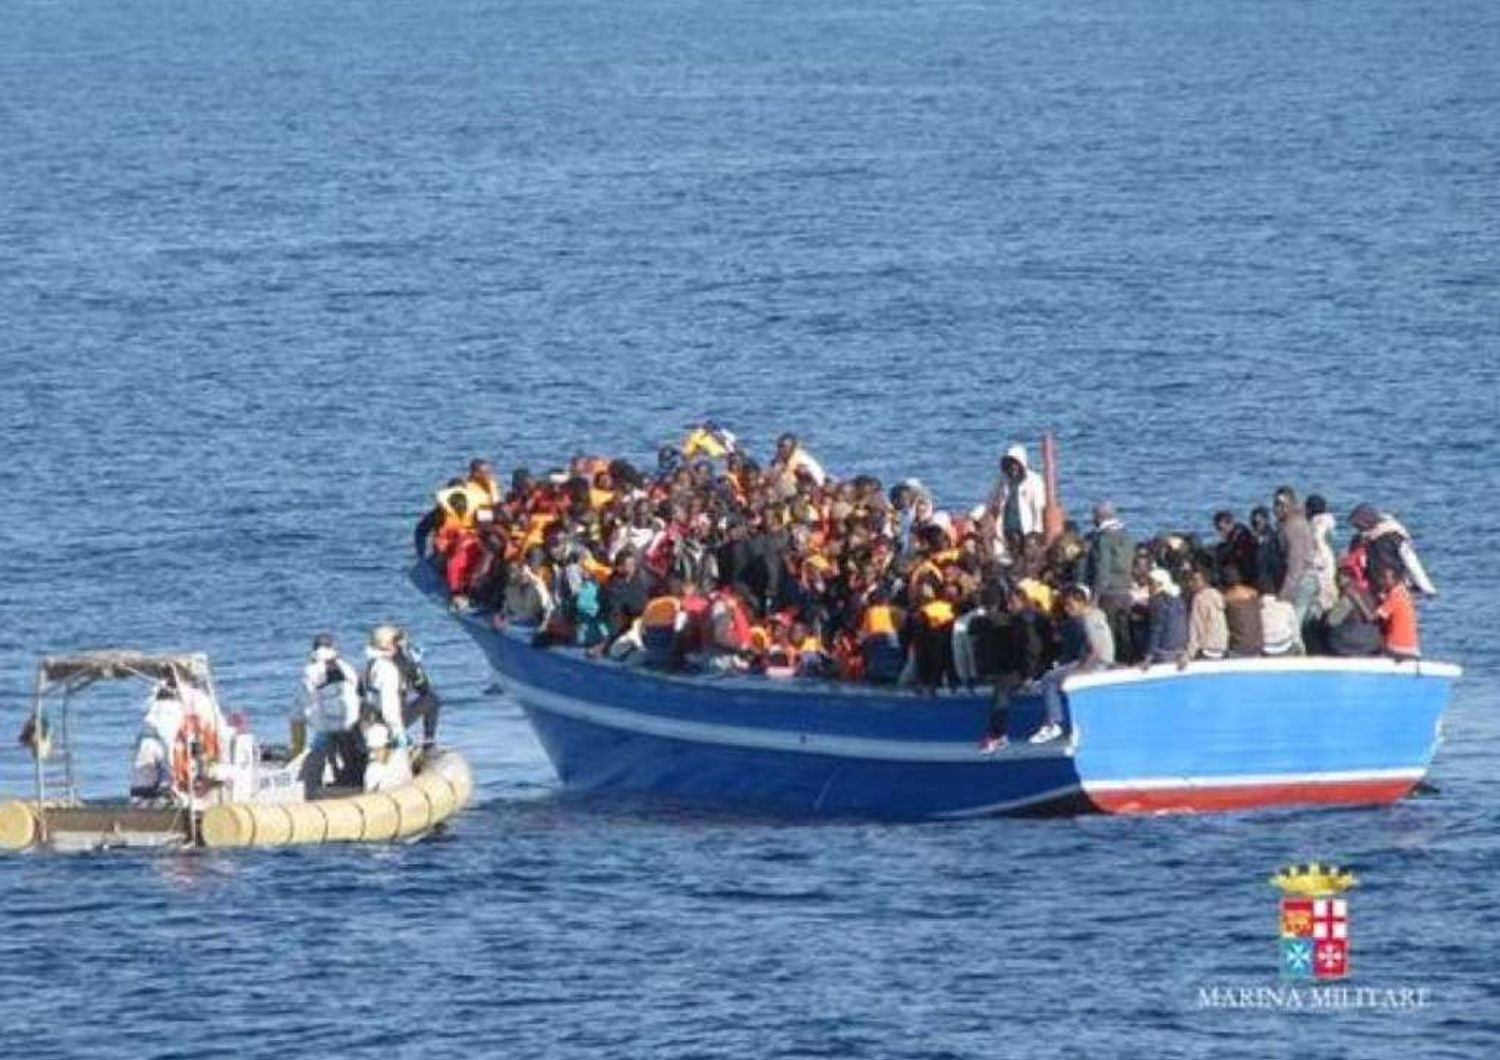 Immigrati: 3.419 morti nel Mediterraneo nel 2014, cifra record